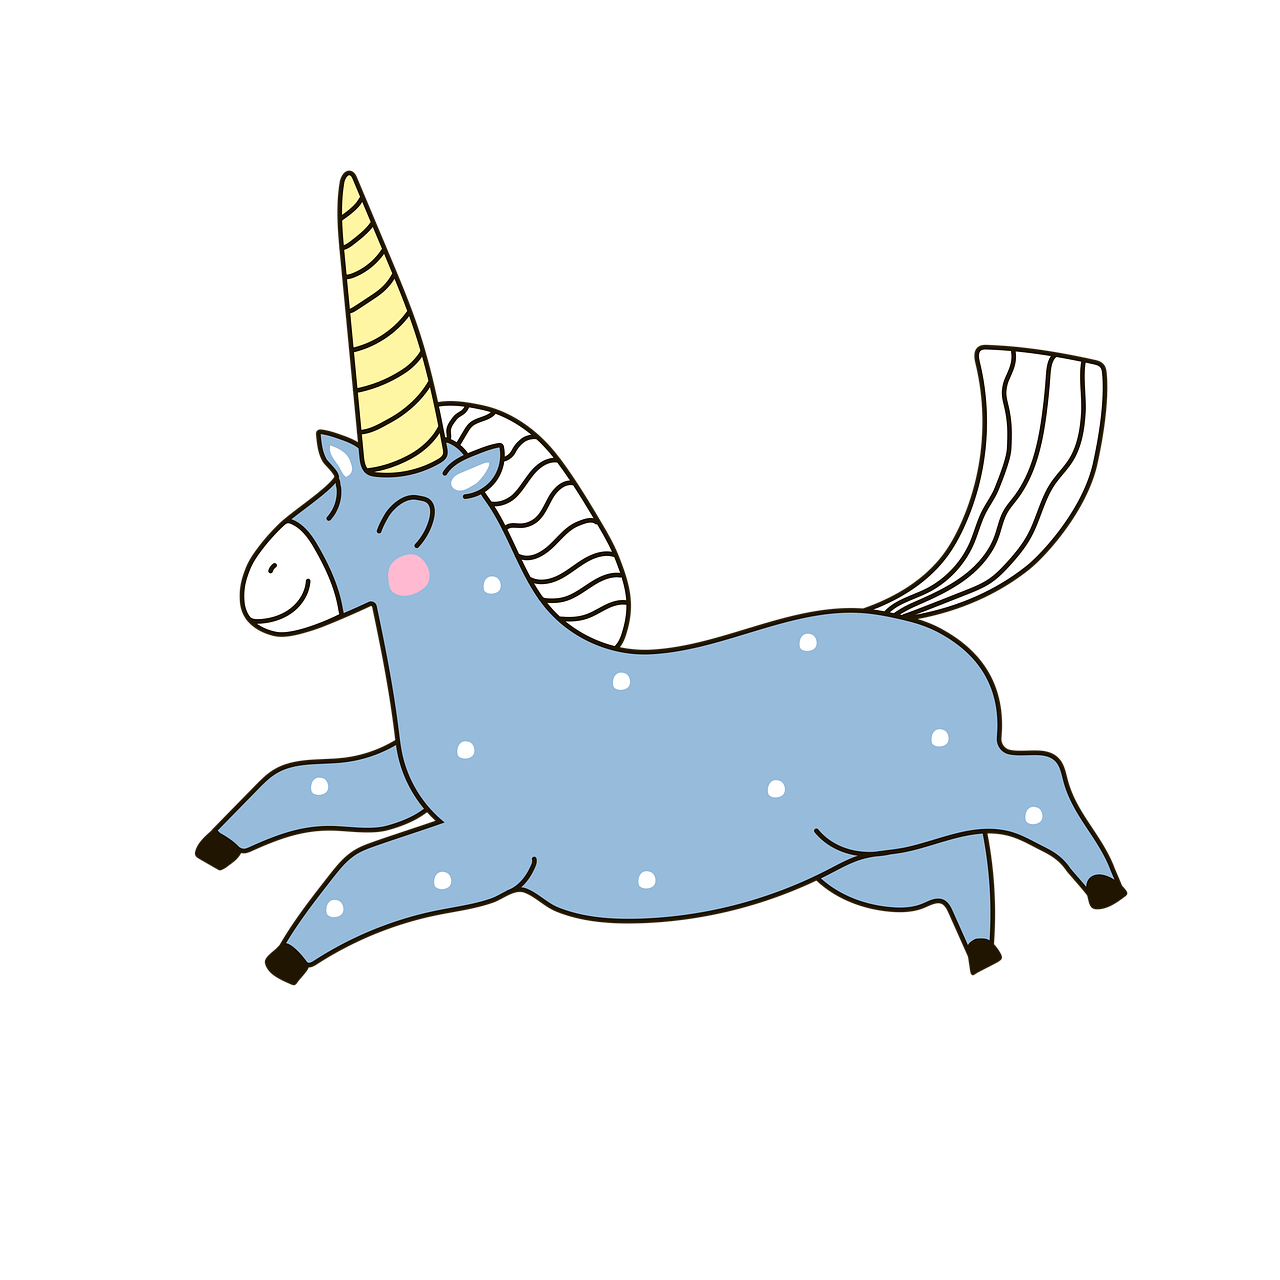 ¿Qué es el significado del unicornio?